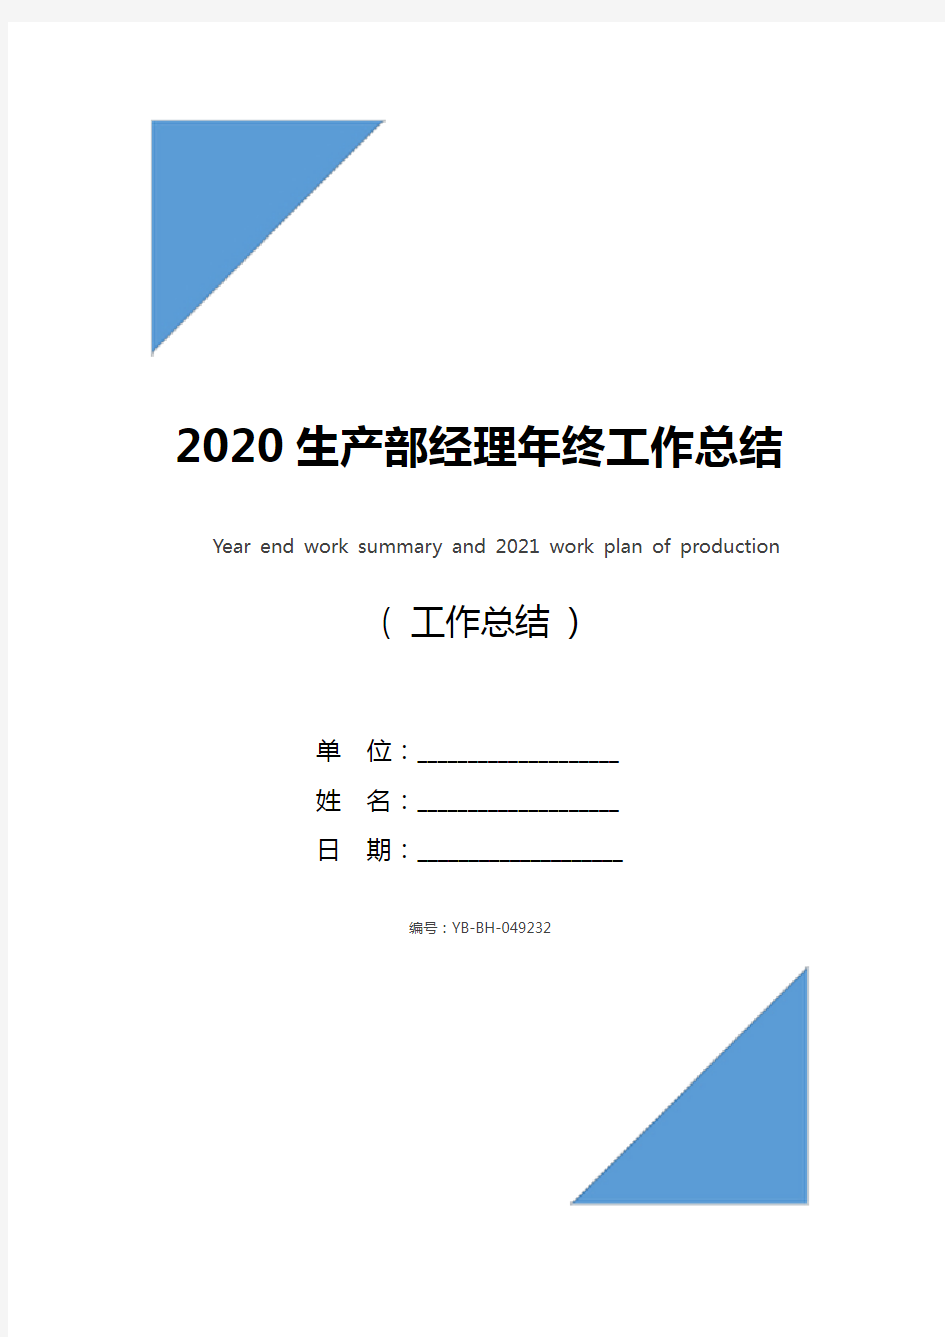 2020生产部经理年终工作总结及2021工作计划